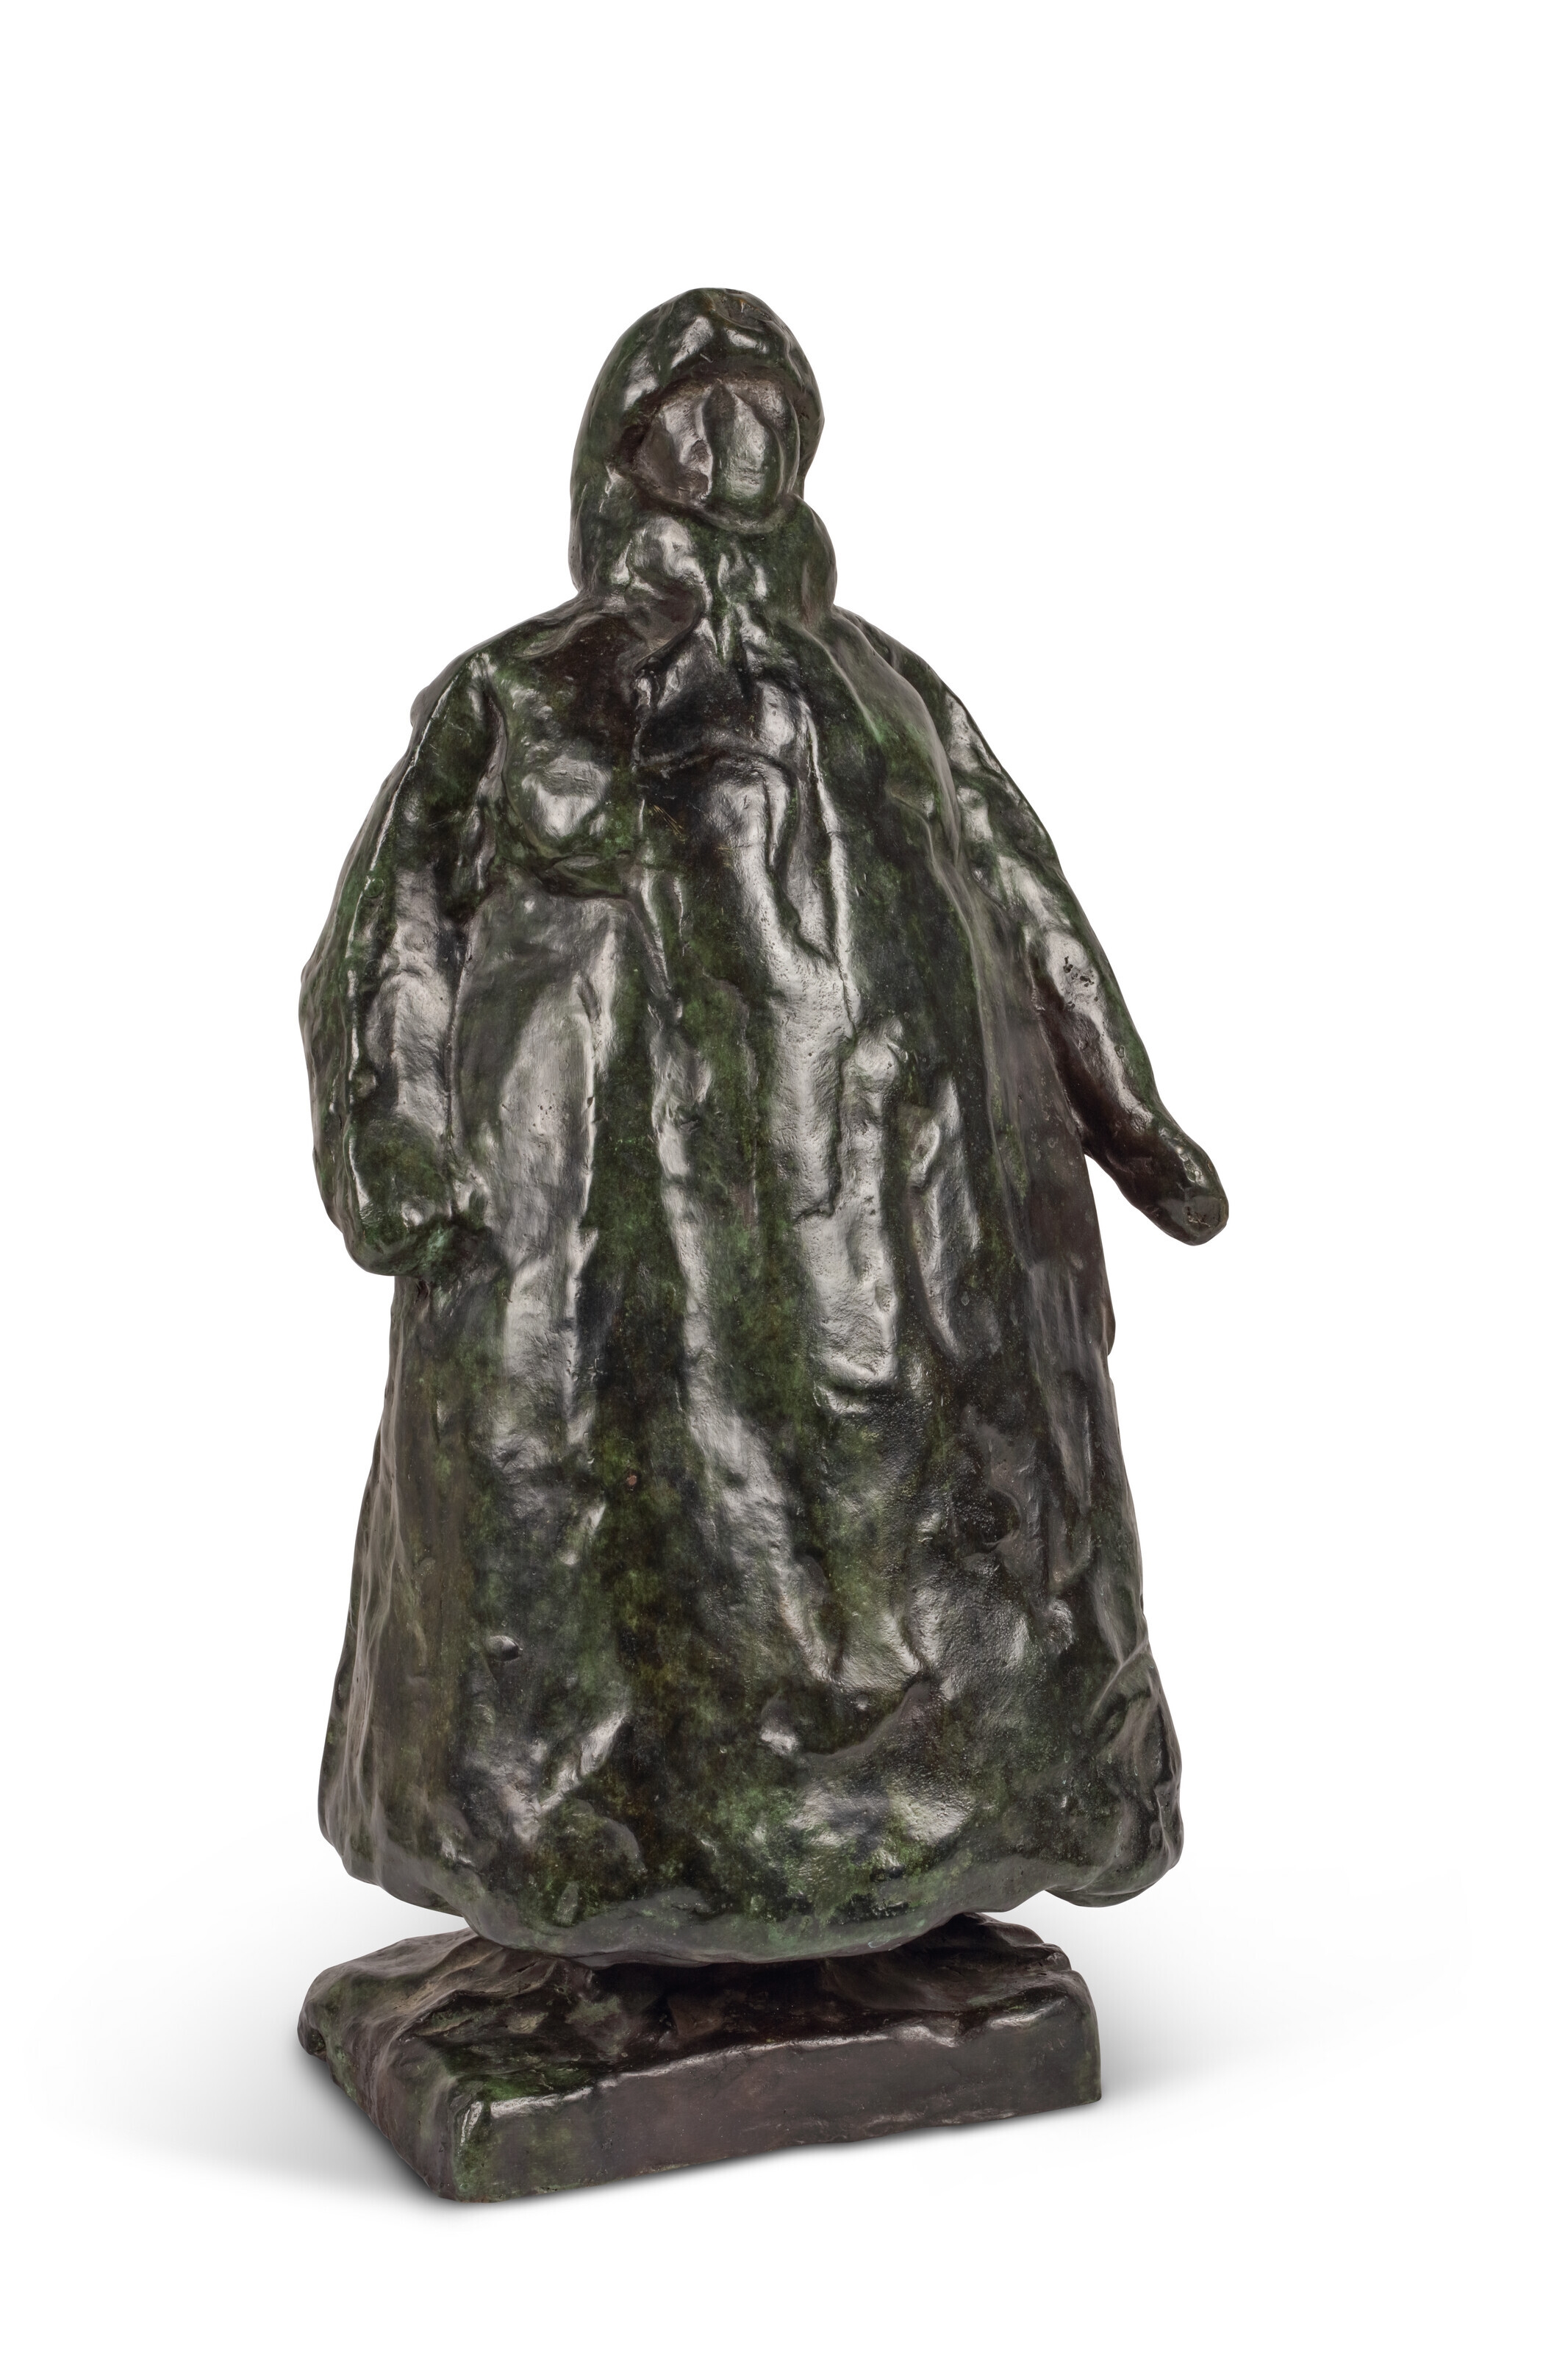 Artwork by Charlotte van Pallandt, Koningin Wilhelmina, Made of bronze with a dark green patina